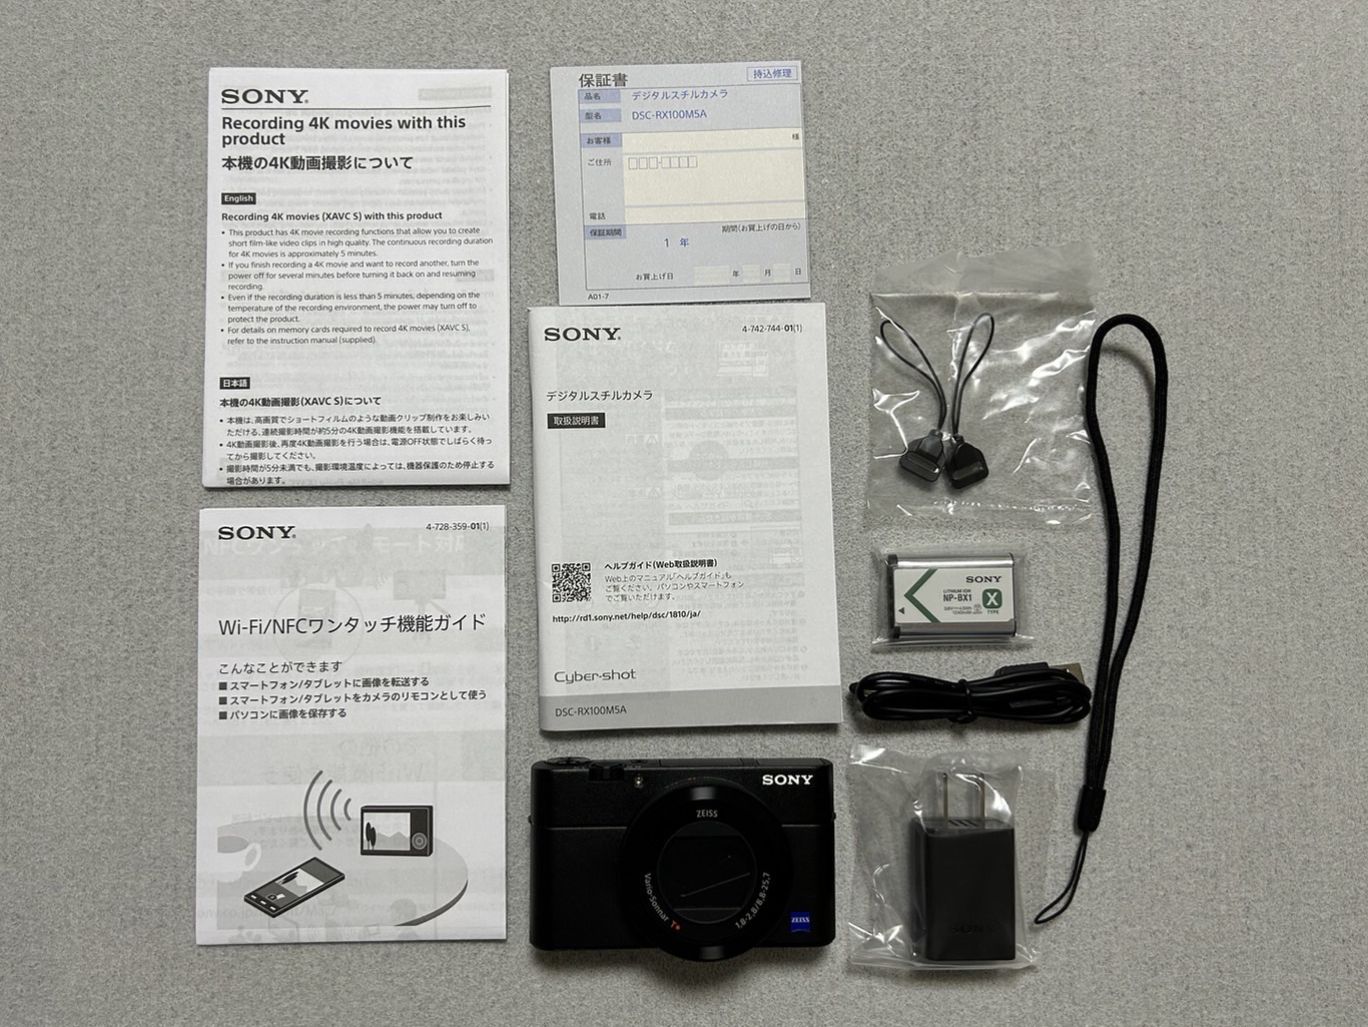 サイバーショット, DSC-RX100M5A, SONY, コンパクトデジタルカメラ, 梱包品